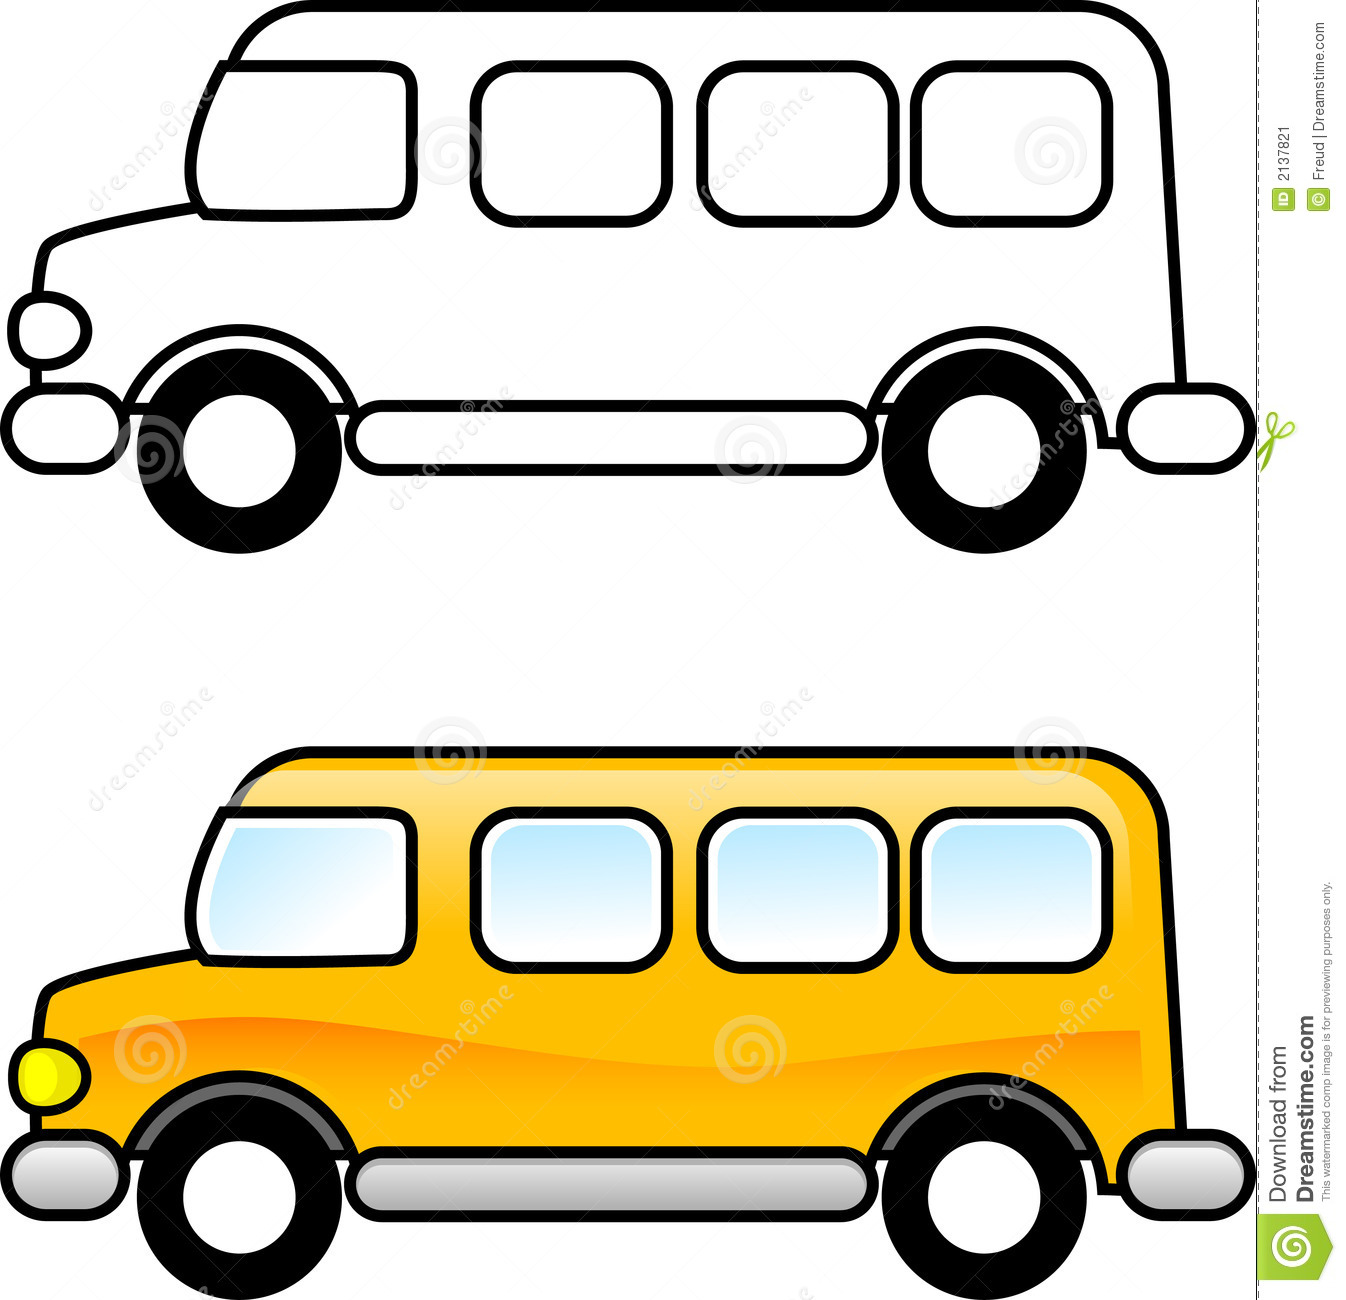 School Bus Coloring Page School Bus 2137821 Jpg